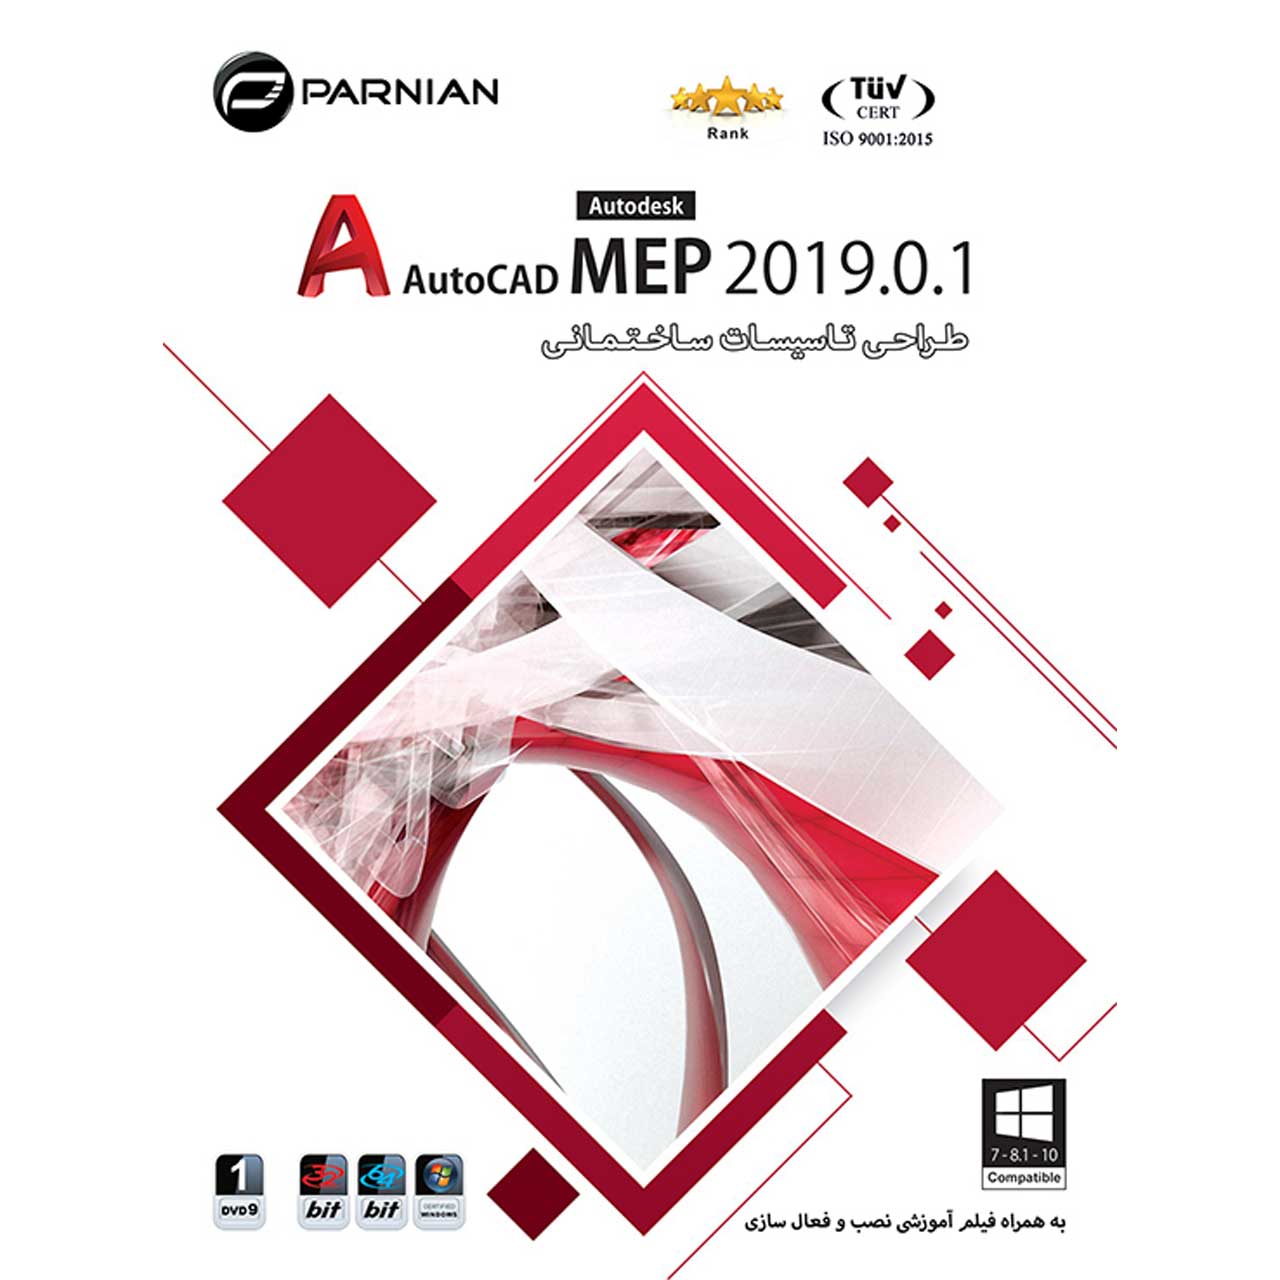 نرم افزار طـراحـی تـاسیسـات سـاخـتـمـانـی AutoCAD MEP 2019.0.1 نشر پرنیان